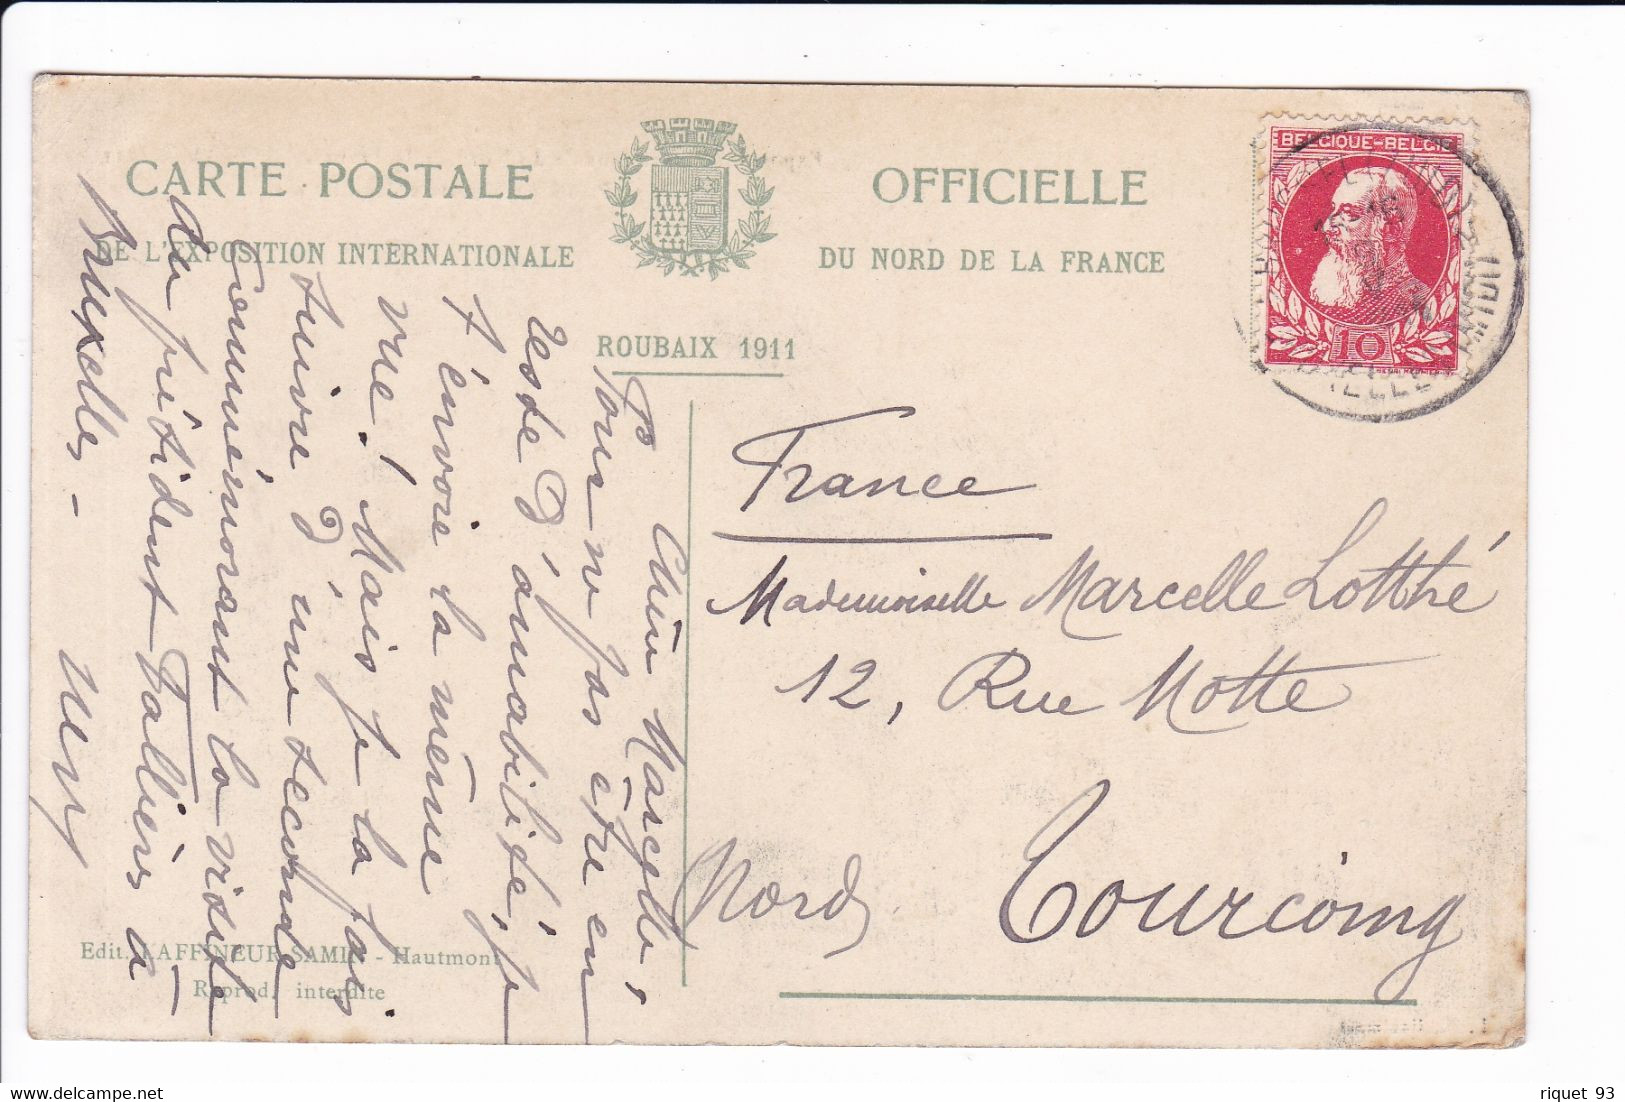 lot 8 cp-Exposition internationale du Nord de la France. ROUBAIX 1911- Vues diverses (voir scans)